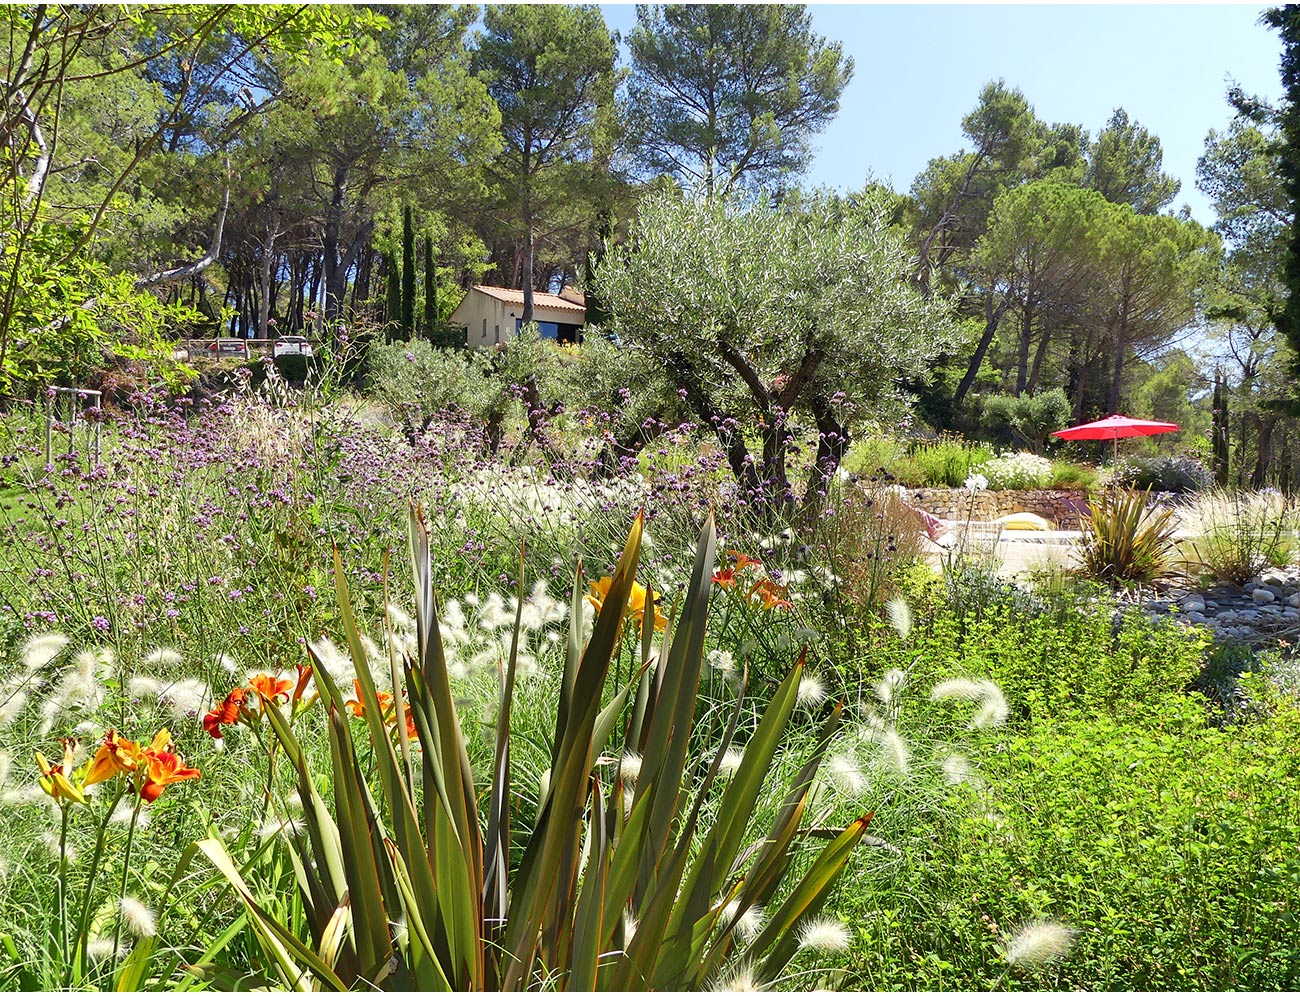 Atelier Naudier - Architecte paysagiste concepteur - Montpellier et Aix en Provence - Jardin méditerranéen fleuri et naturel - aménagement jardin